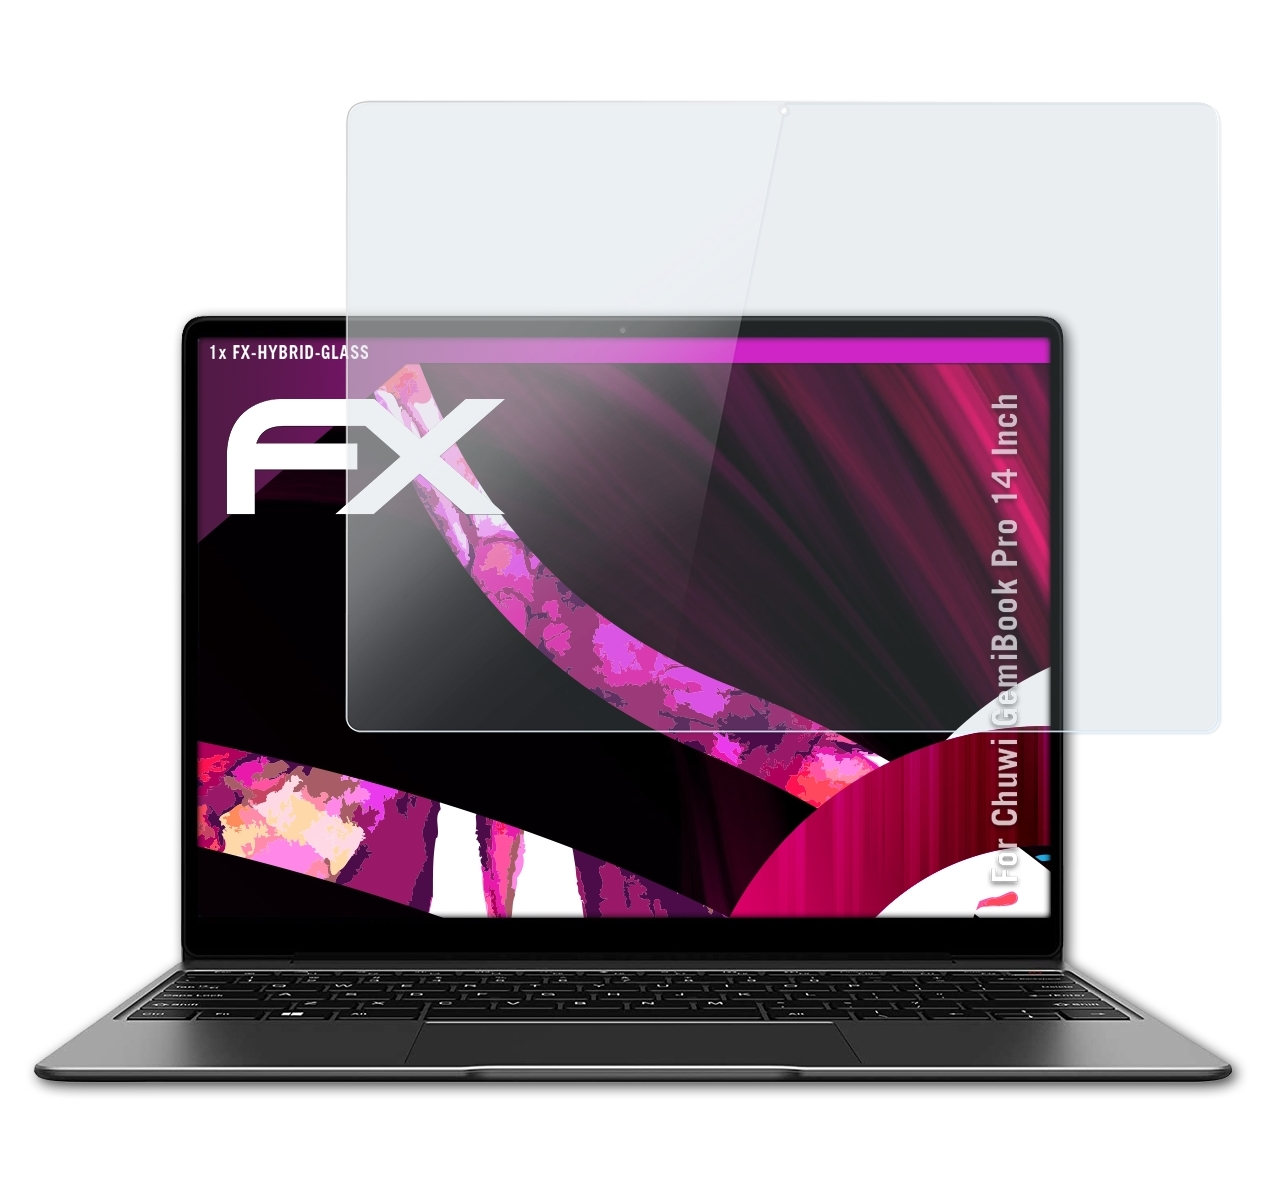 FX-Hybrid-Glass Pro Chuwi Schutzglas(für ATFOLIX Inch)) GemiBook (14